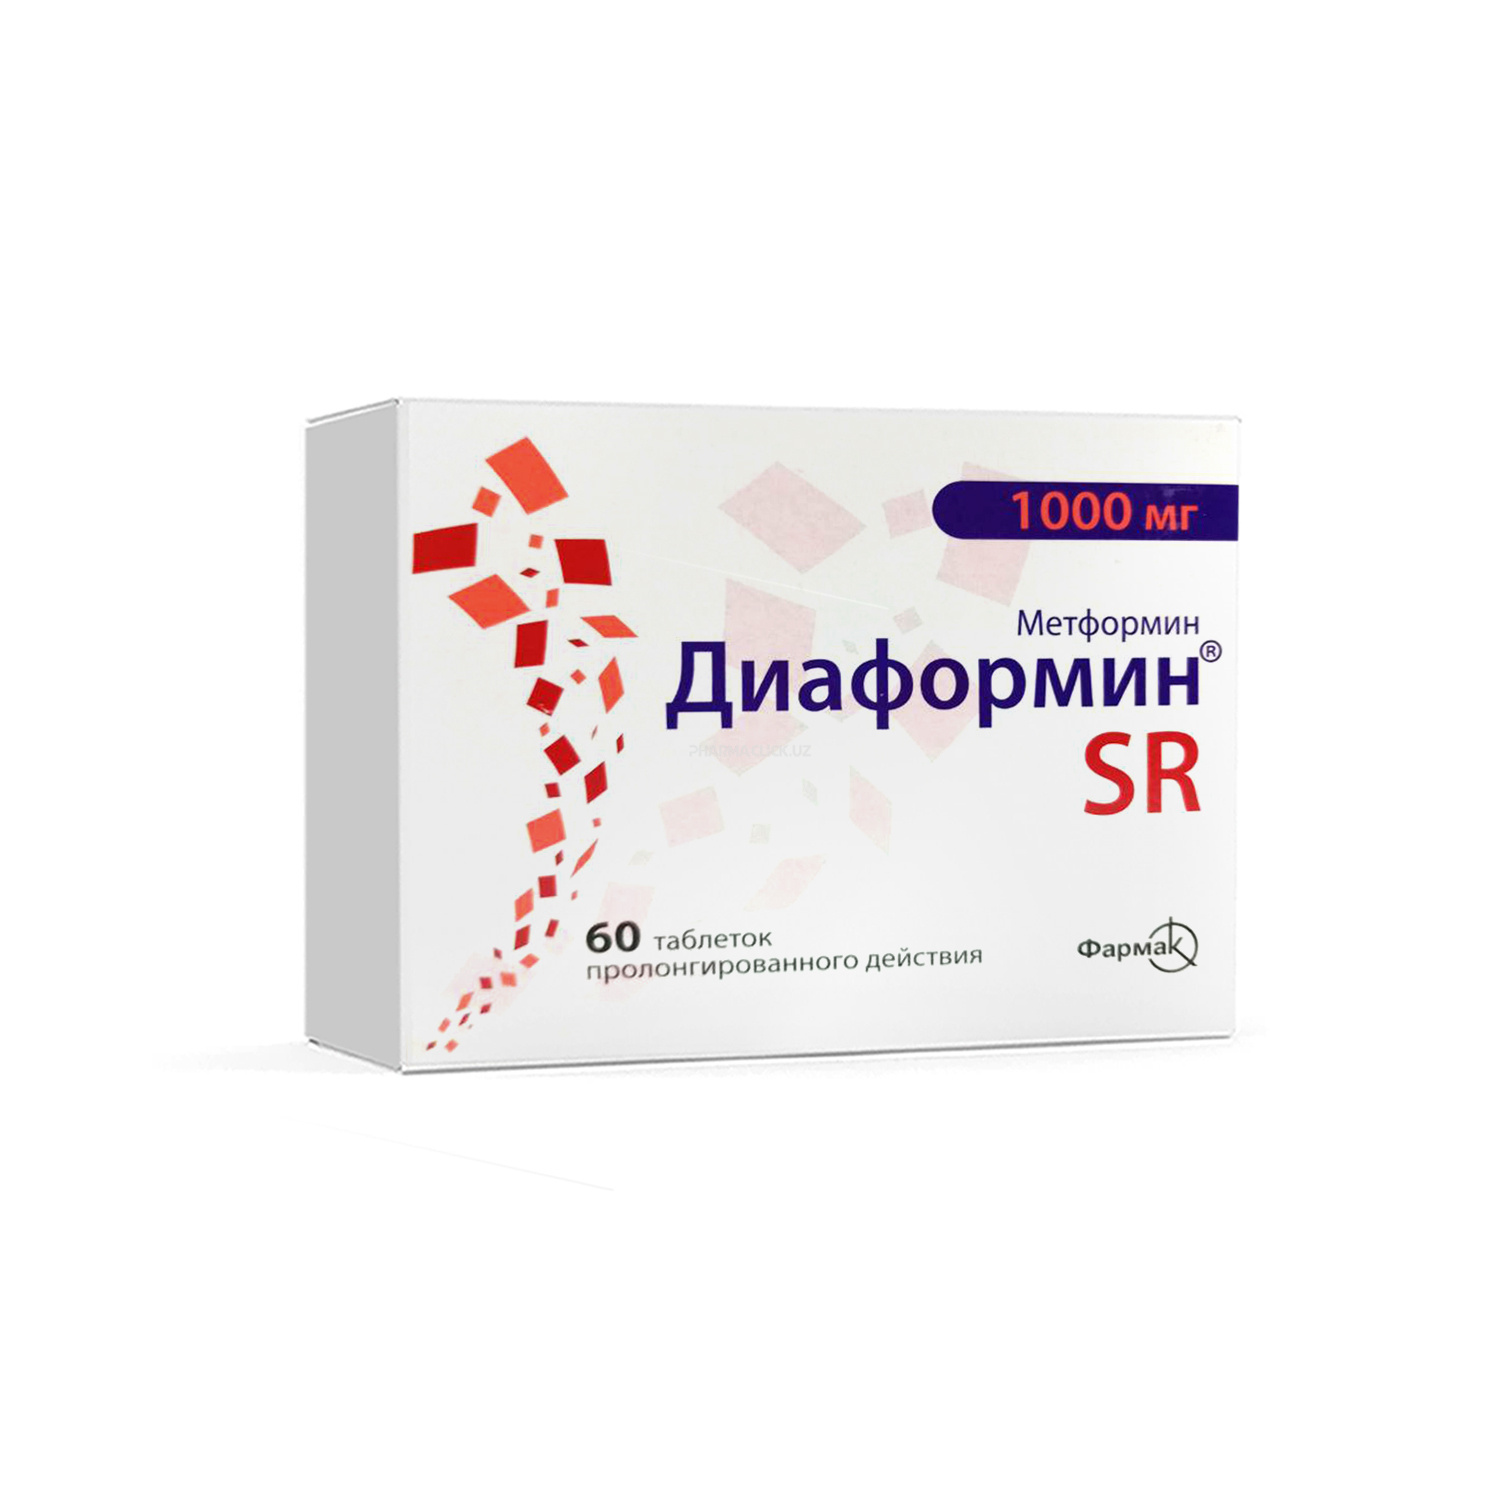 Диаформин SR 1000 мг №60